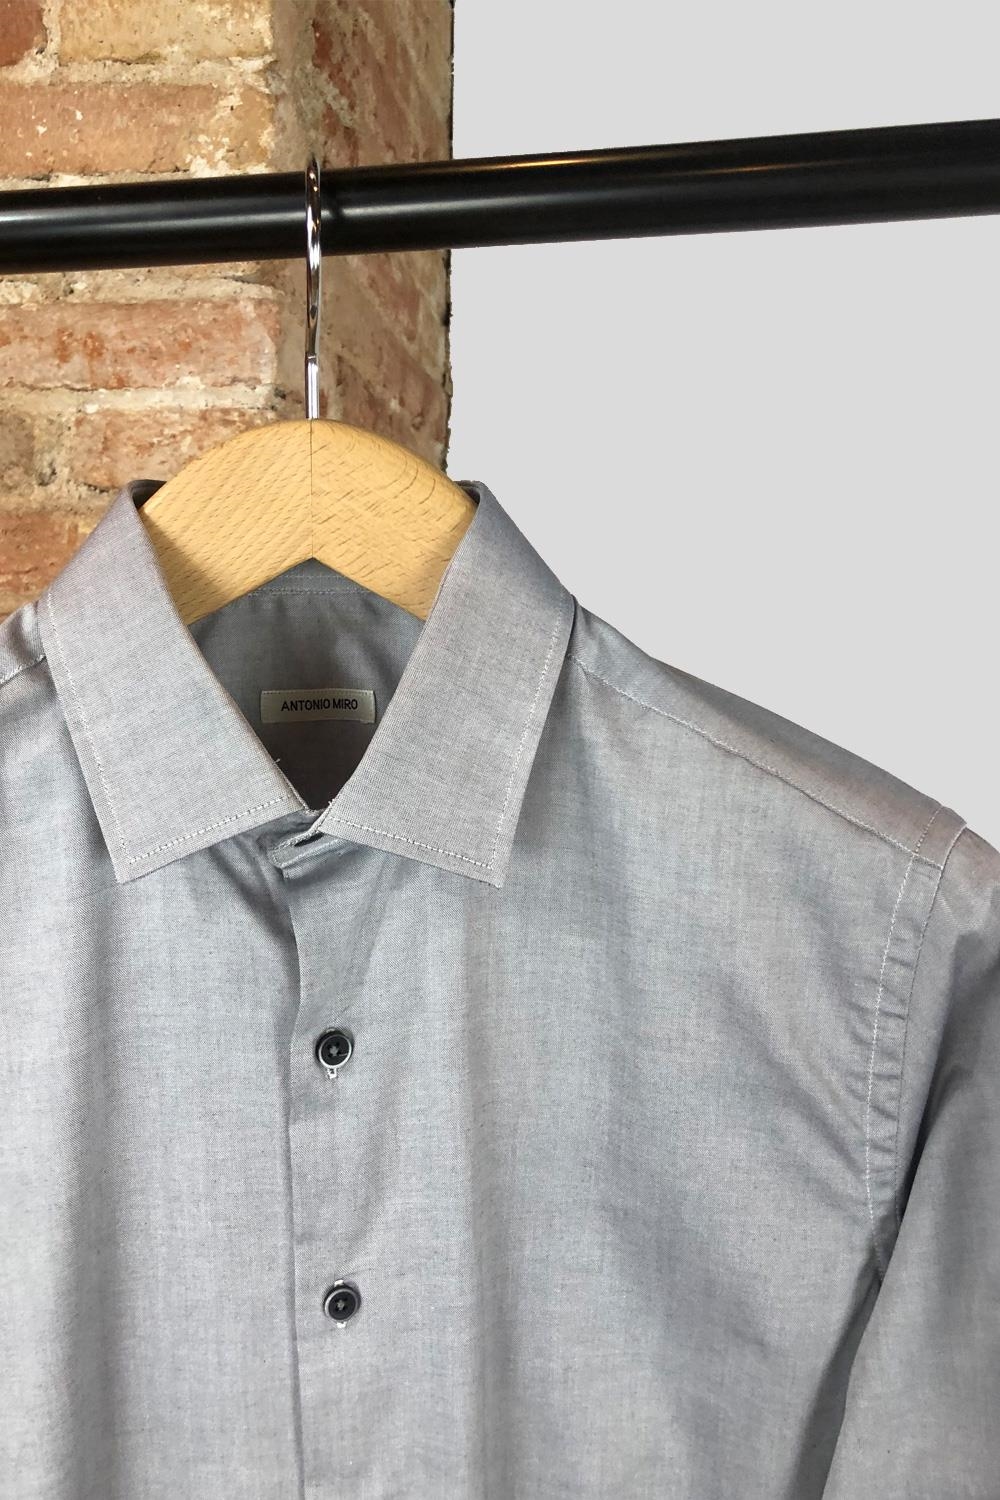 Camisa algodón 100% sport lisa gris | 3966